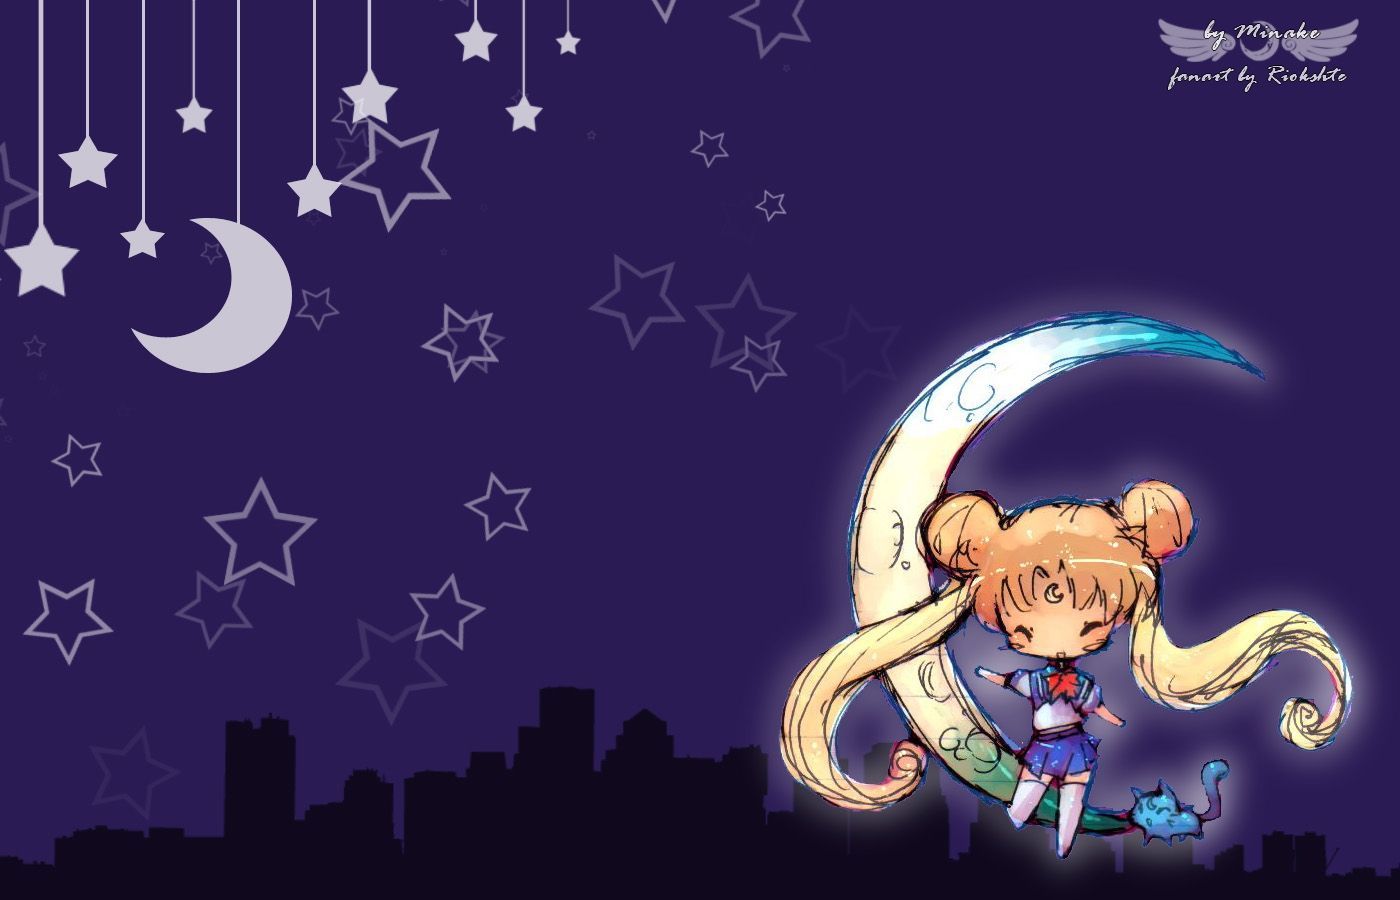 Sailor Moon Wallpaper. Sailor moon wallpaper, Sailor moon